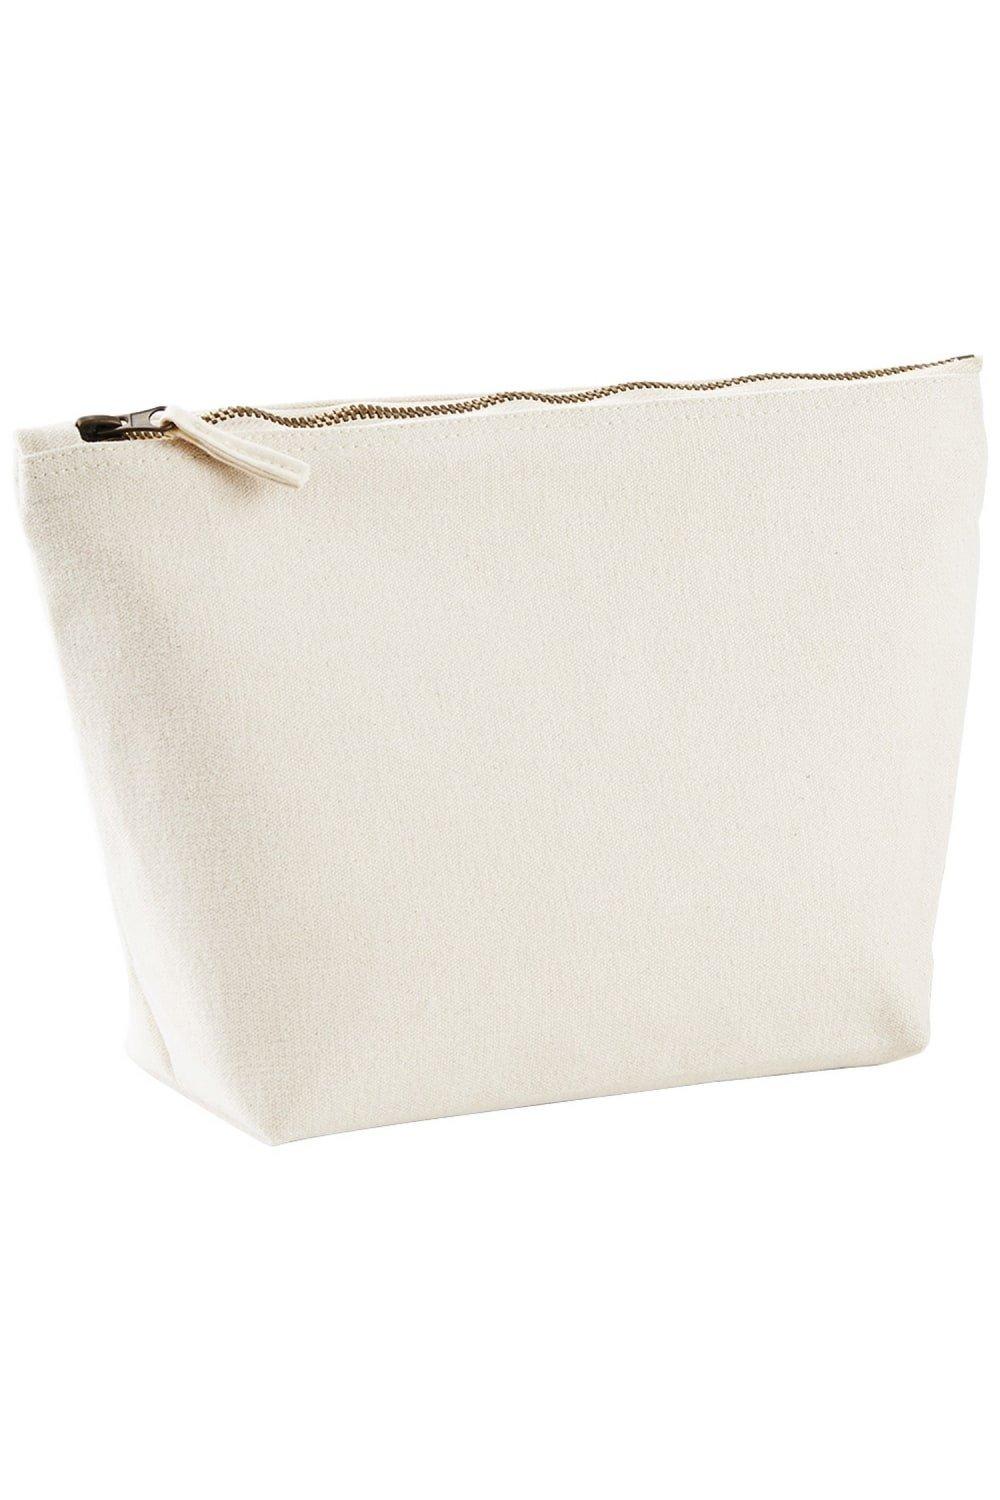 Холщовая сумка для аксессуаров (2 шт.) Westford Mill, обнаженная 200 шт упаковка бумажные наклейки в винтажном стиле